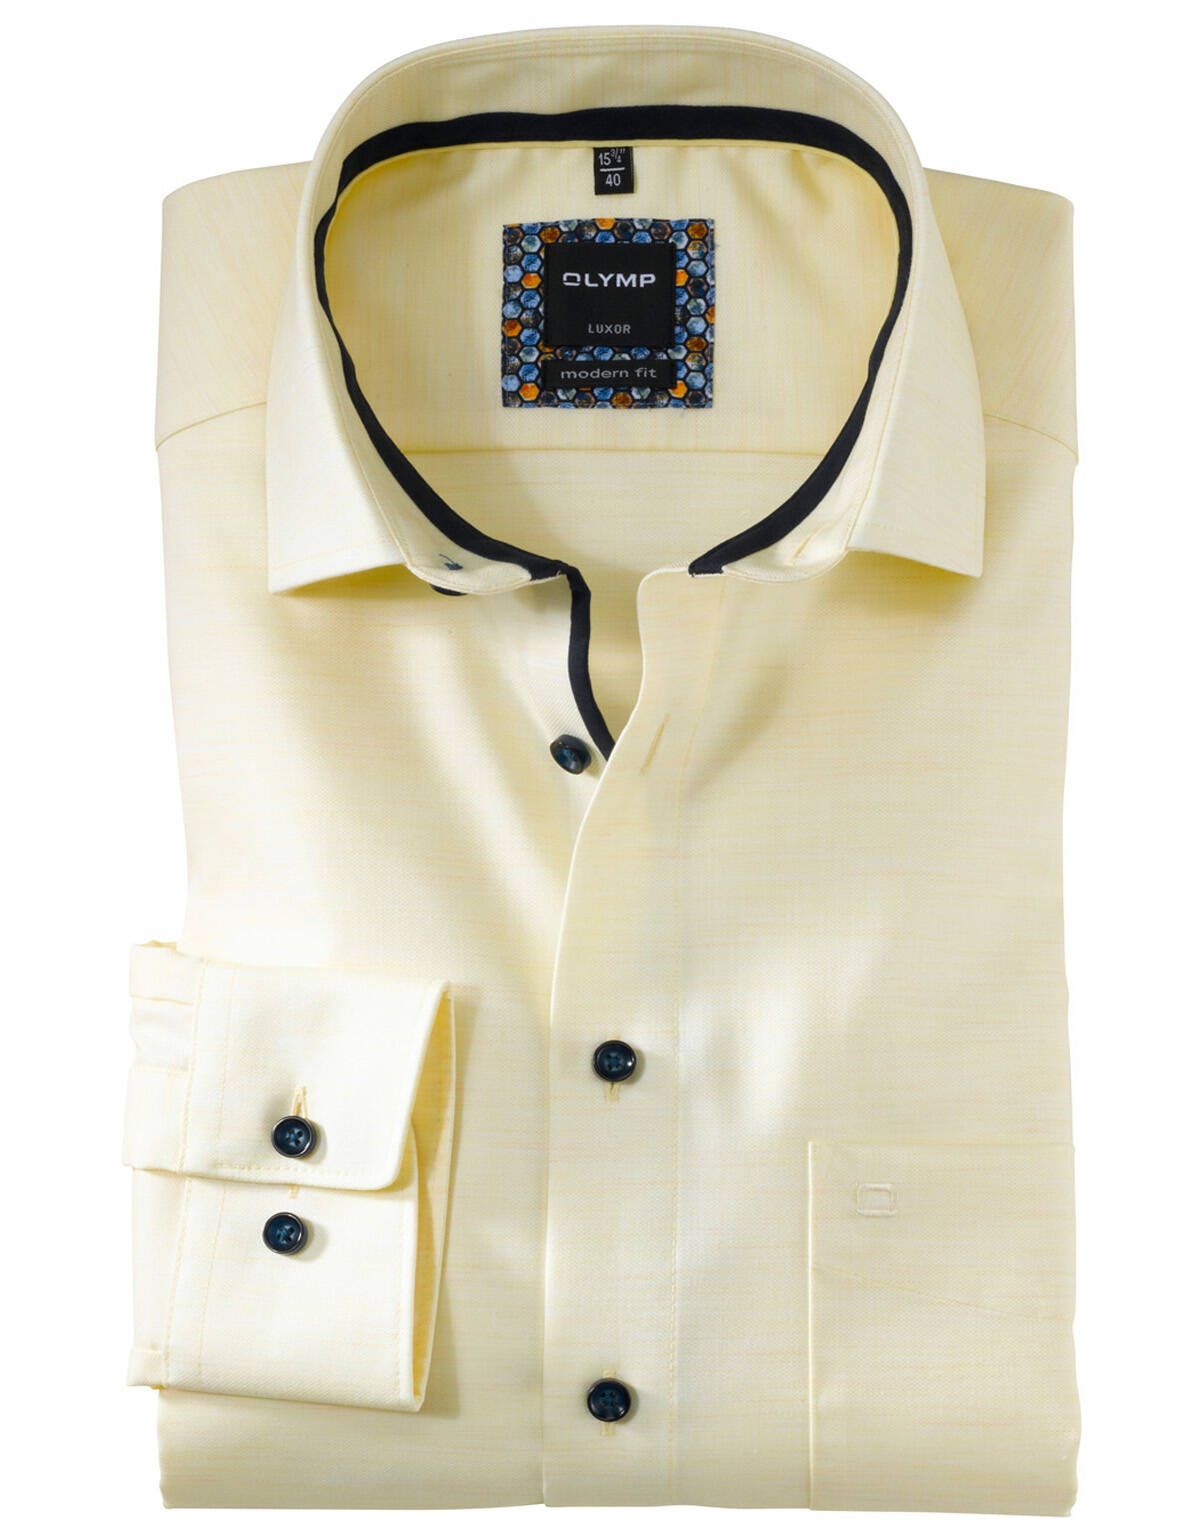 Мужская рубашка OLYMP Luxor, modern fit[ЖЁЛТЫЙ]